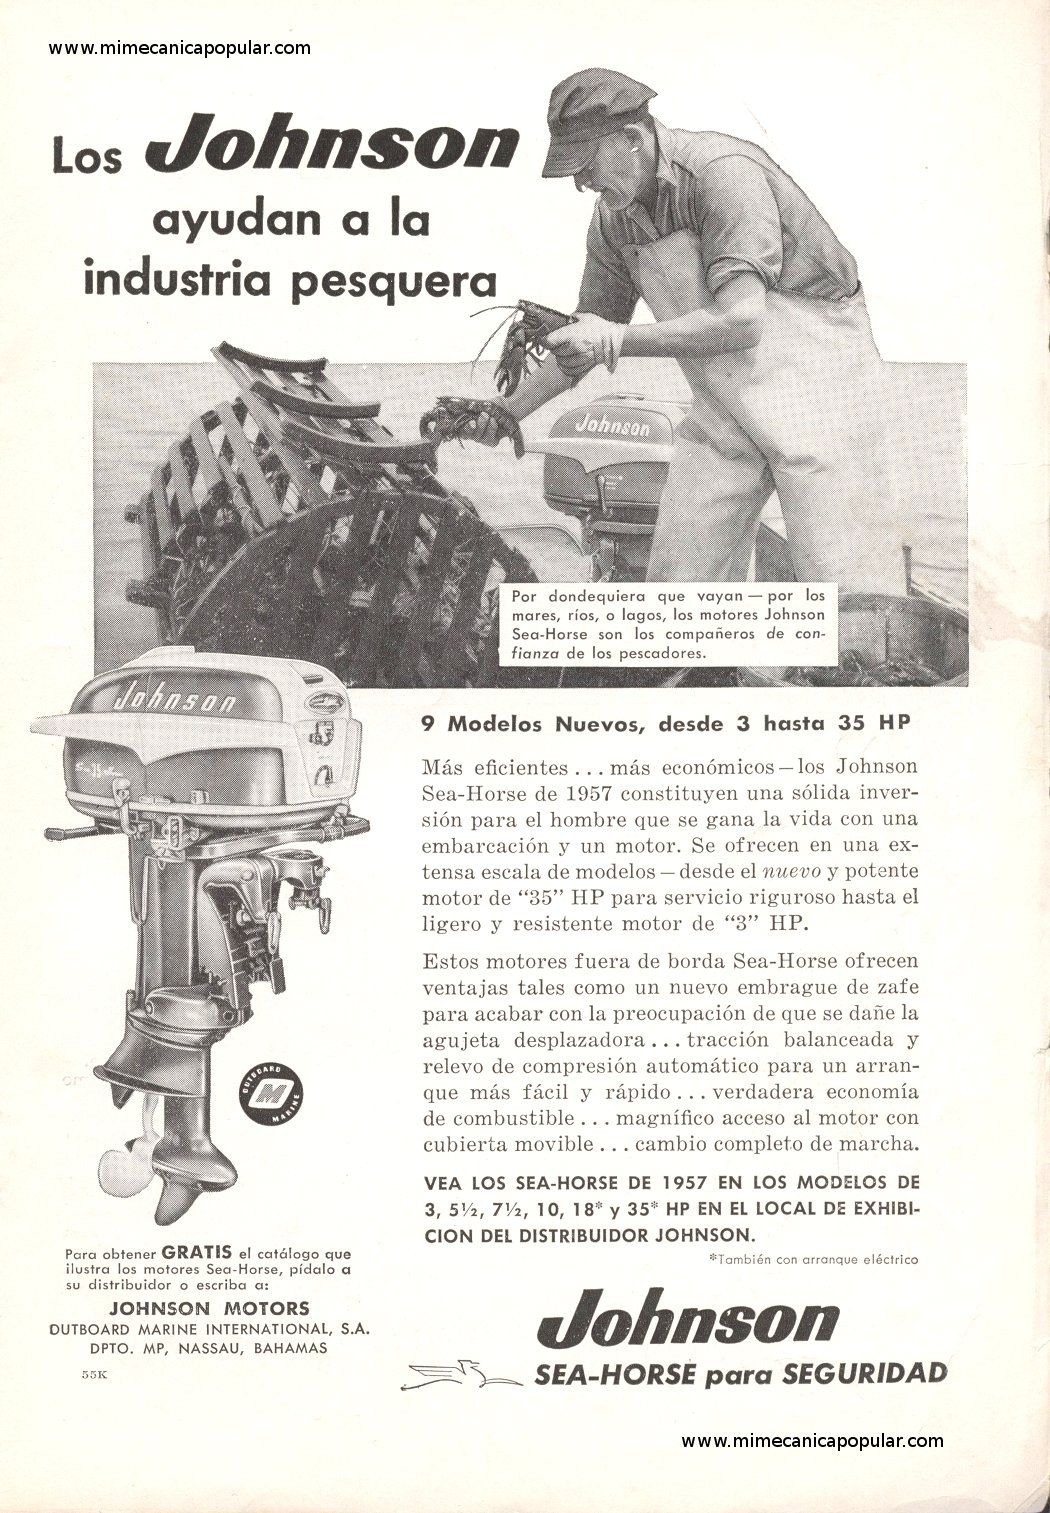 Publicidad - Motores fuera de borda Johnson - Julio 1957